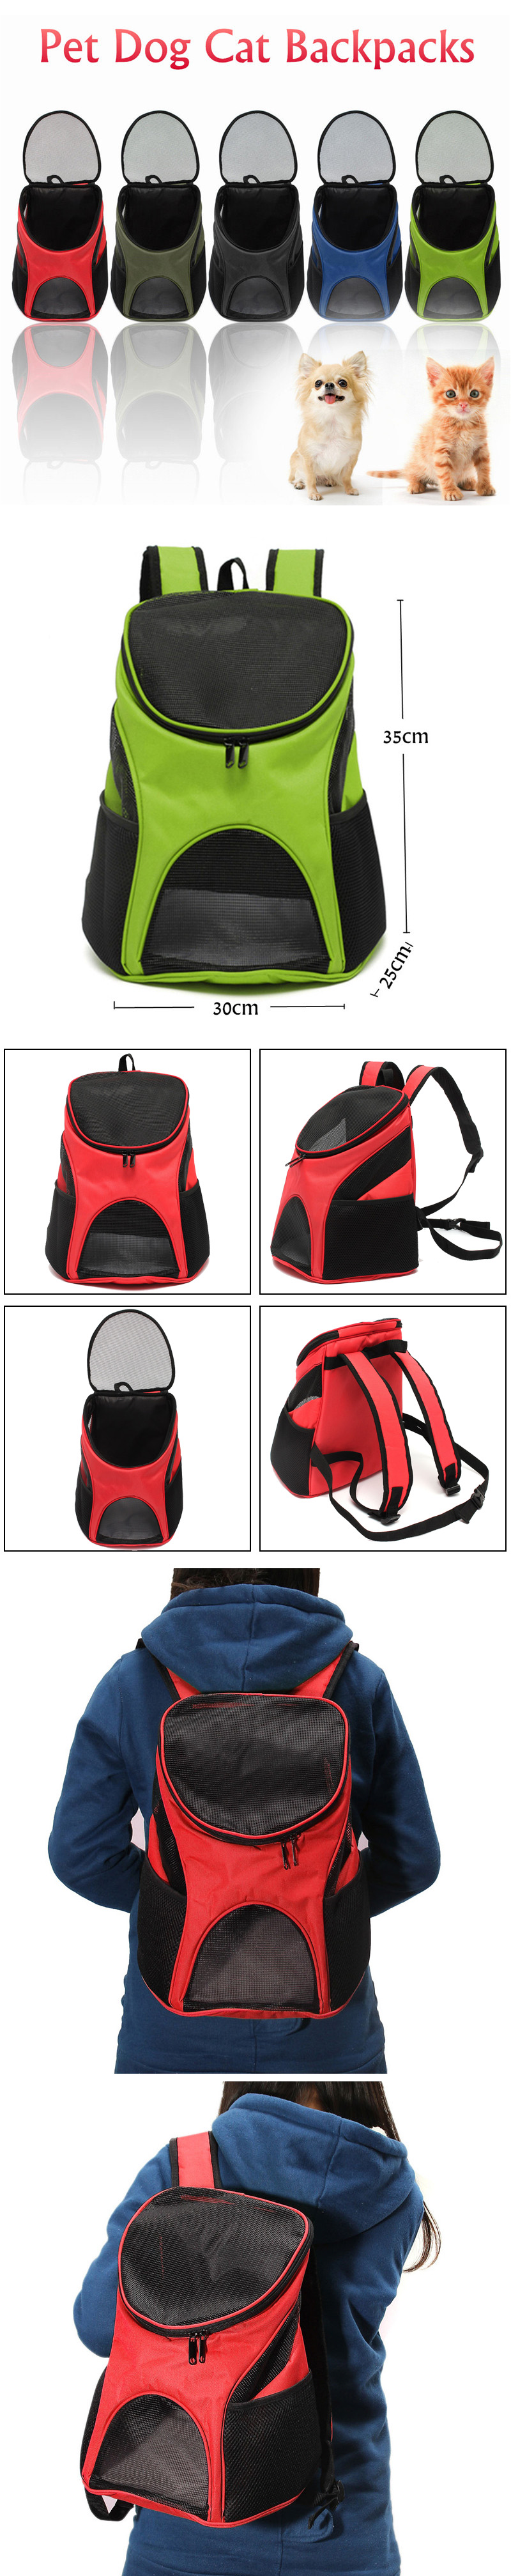 Pet-Dog-Cat-Backpack-Pet-Outside-Sport-Travel-Carry-Bag-Breathable-Shoulder-Bag-1571460-1